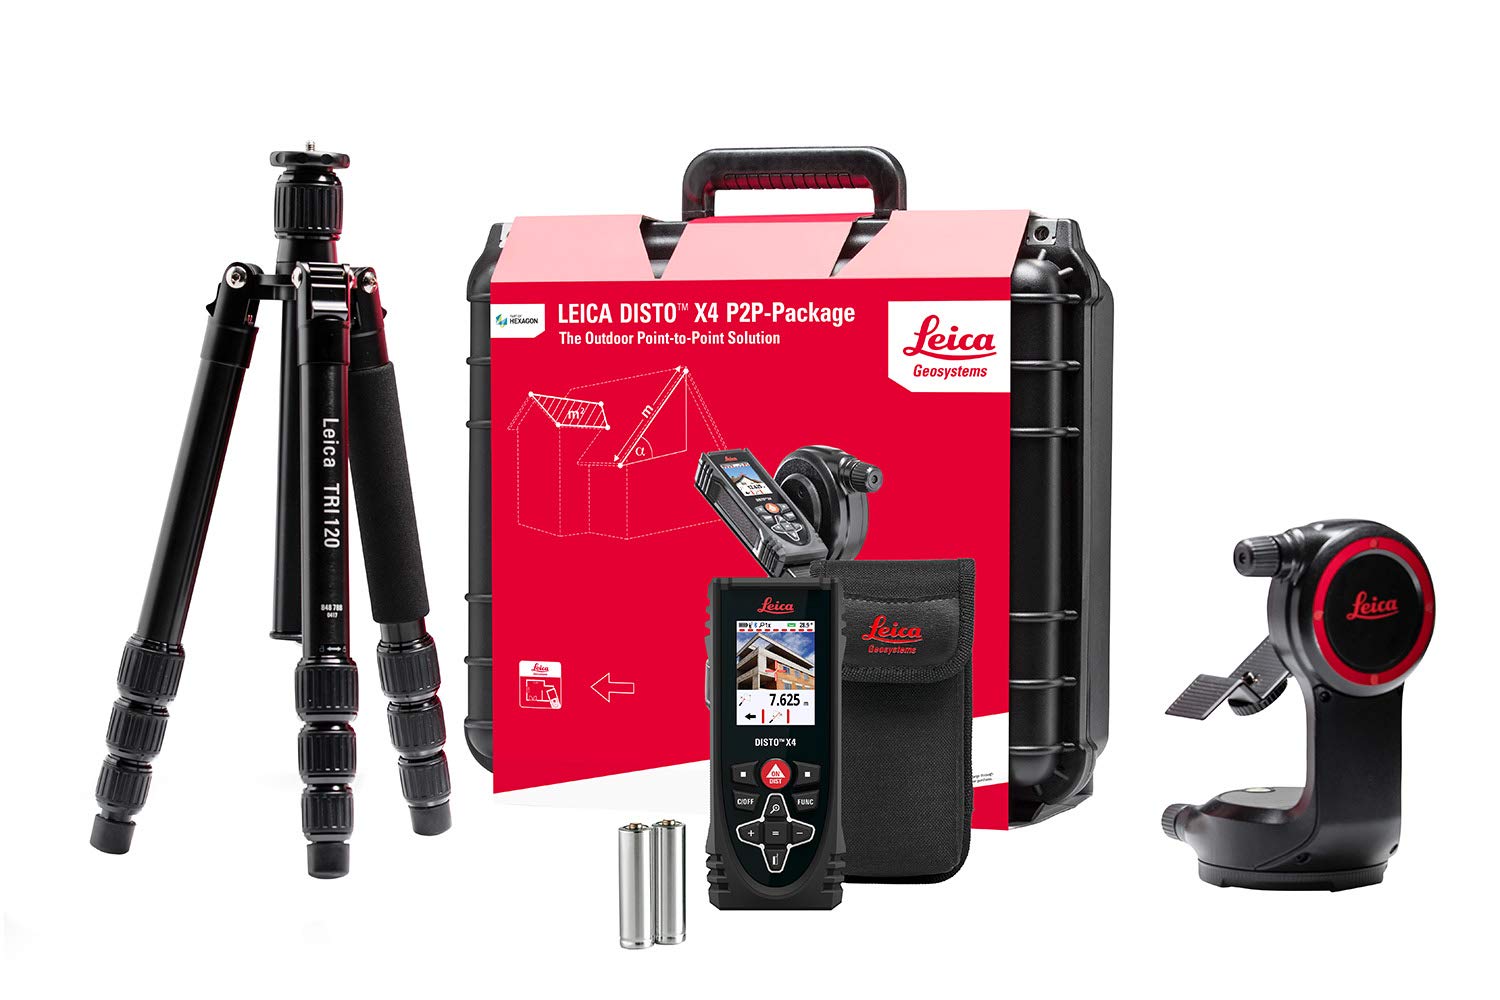 Leica DISTO X4 Paket – robuster Laser Entfernungsmesser mit Leica DST 360 Adapter und TRI 120 Stativ, um 2D und 3D Daten für CAD-Anwendungen zu erfassen (Innen- und Außenbereich), 132 x 56 x 29